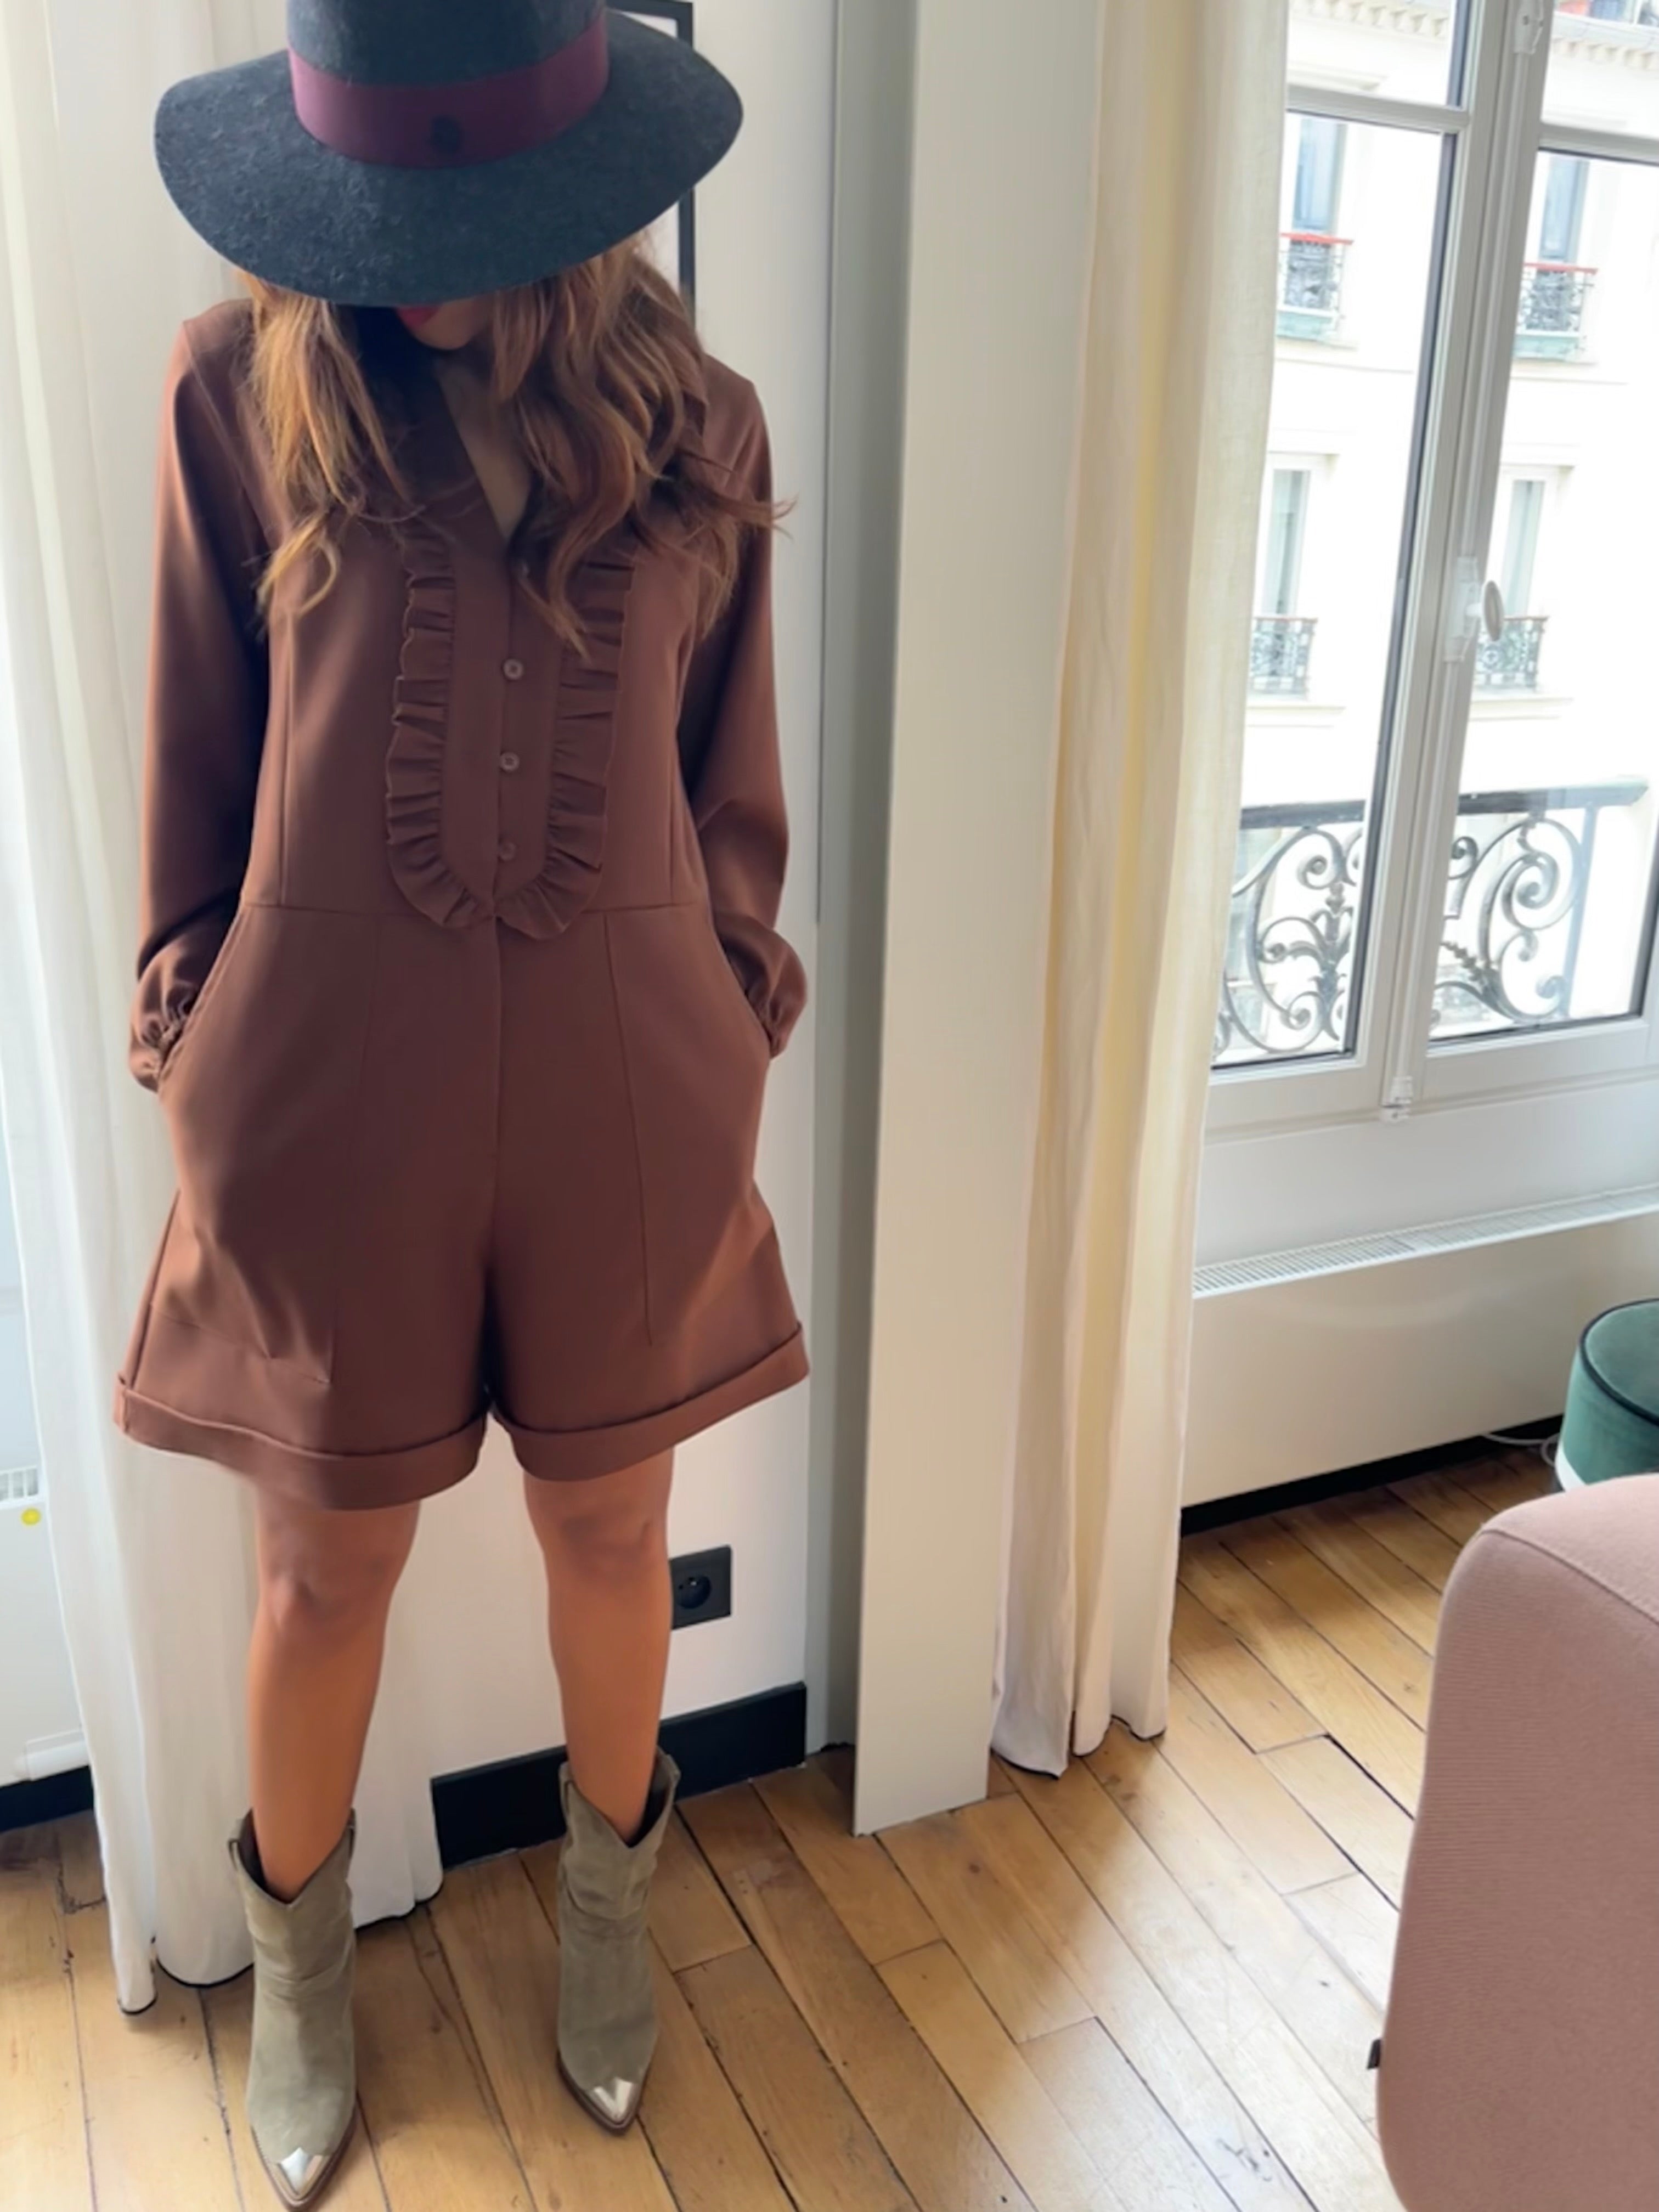 Rachel jumpsuit - brown long sleeves